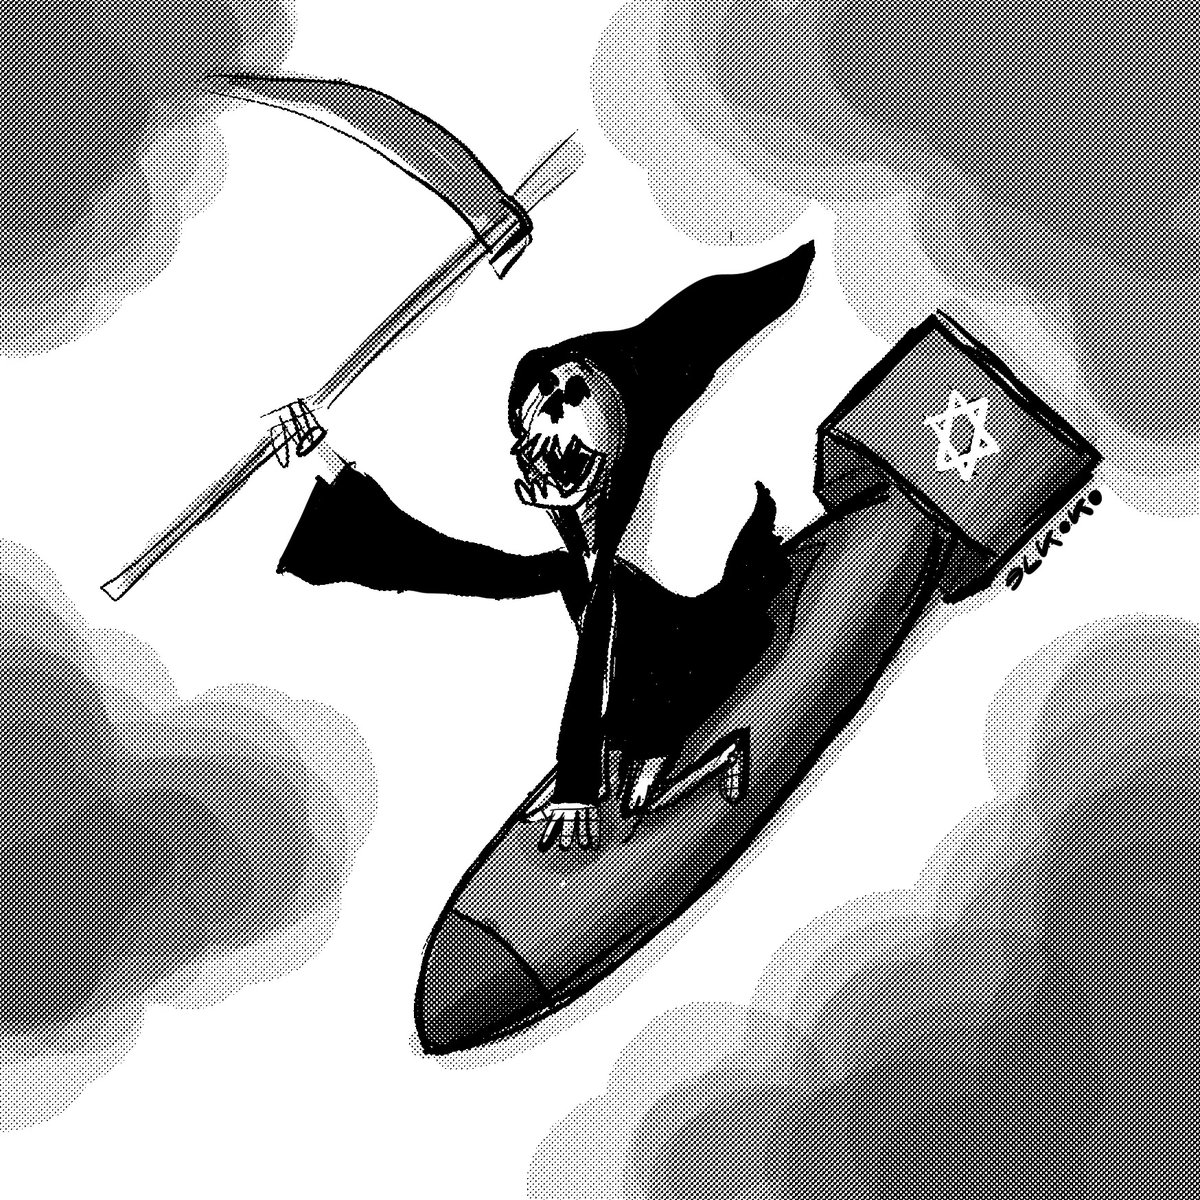 !!No olvidar que el estado Israelí sigue cometiendo un genocidio en Gaza!! #PalestinaVencerá de @Elkokoparrilla